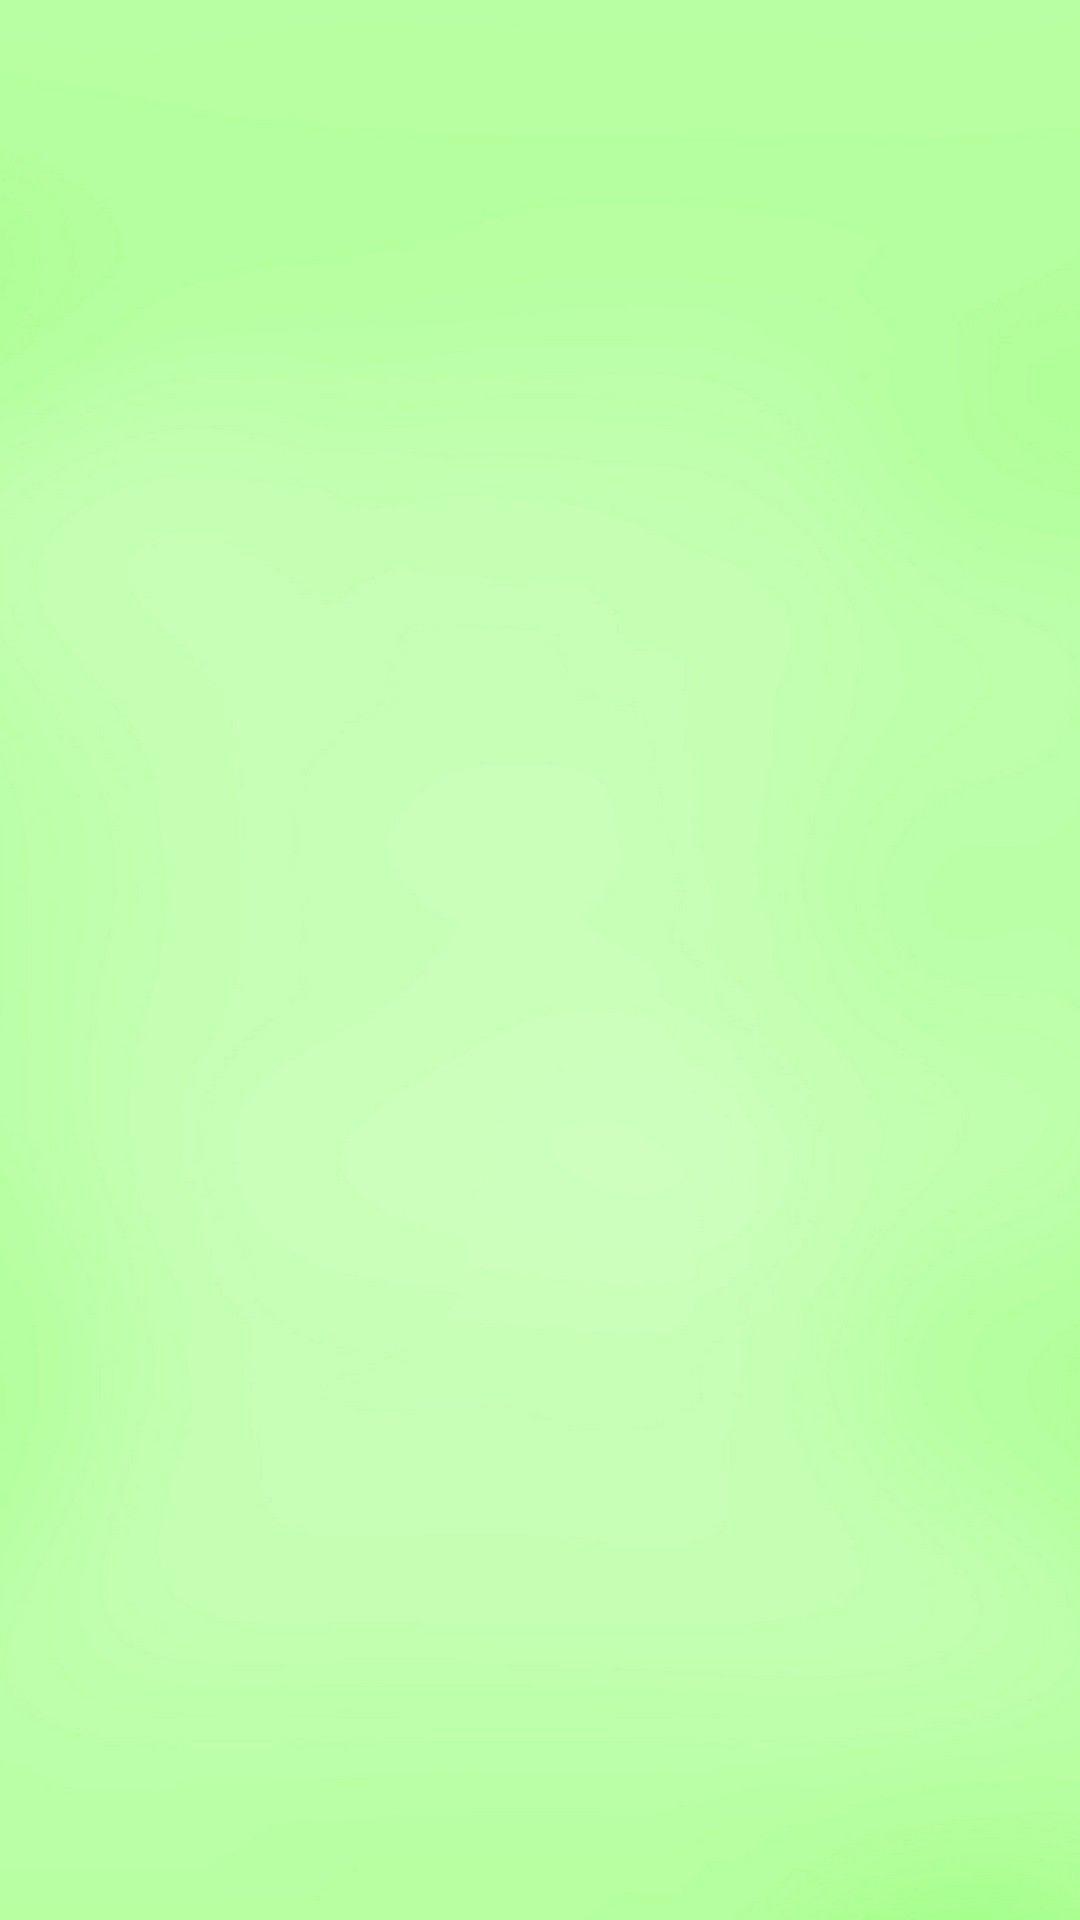 Hình nền 1080x1920 Màu xanh lá cây nhạt Android - Hình nền di động tốt nhất.  Nền đồng màu, Giấy lưu niệm, Màu đồng nhất